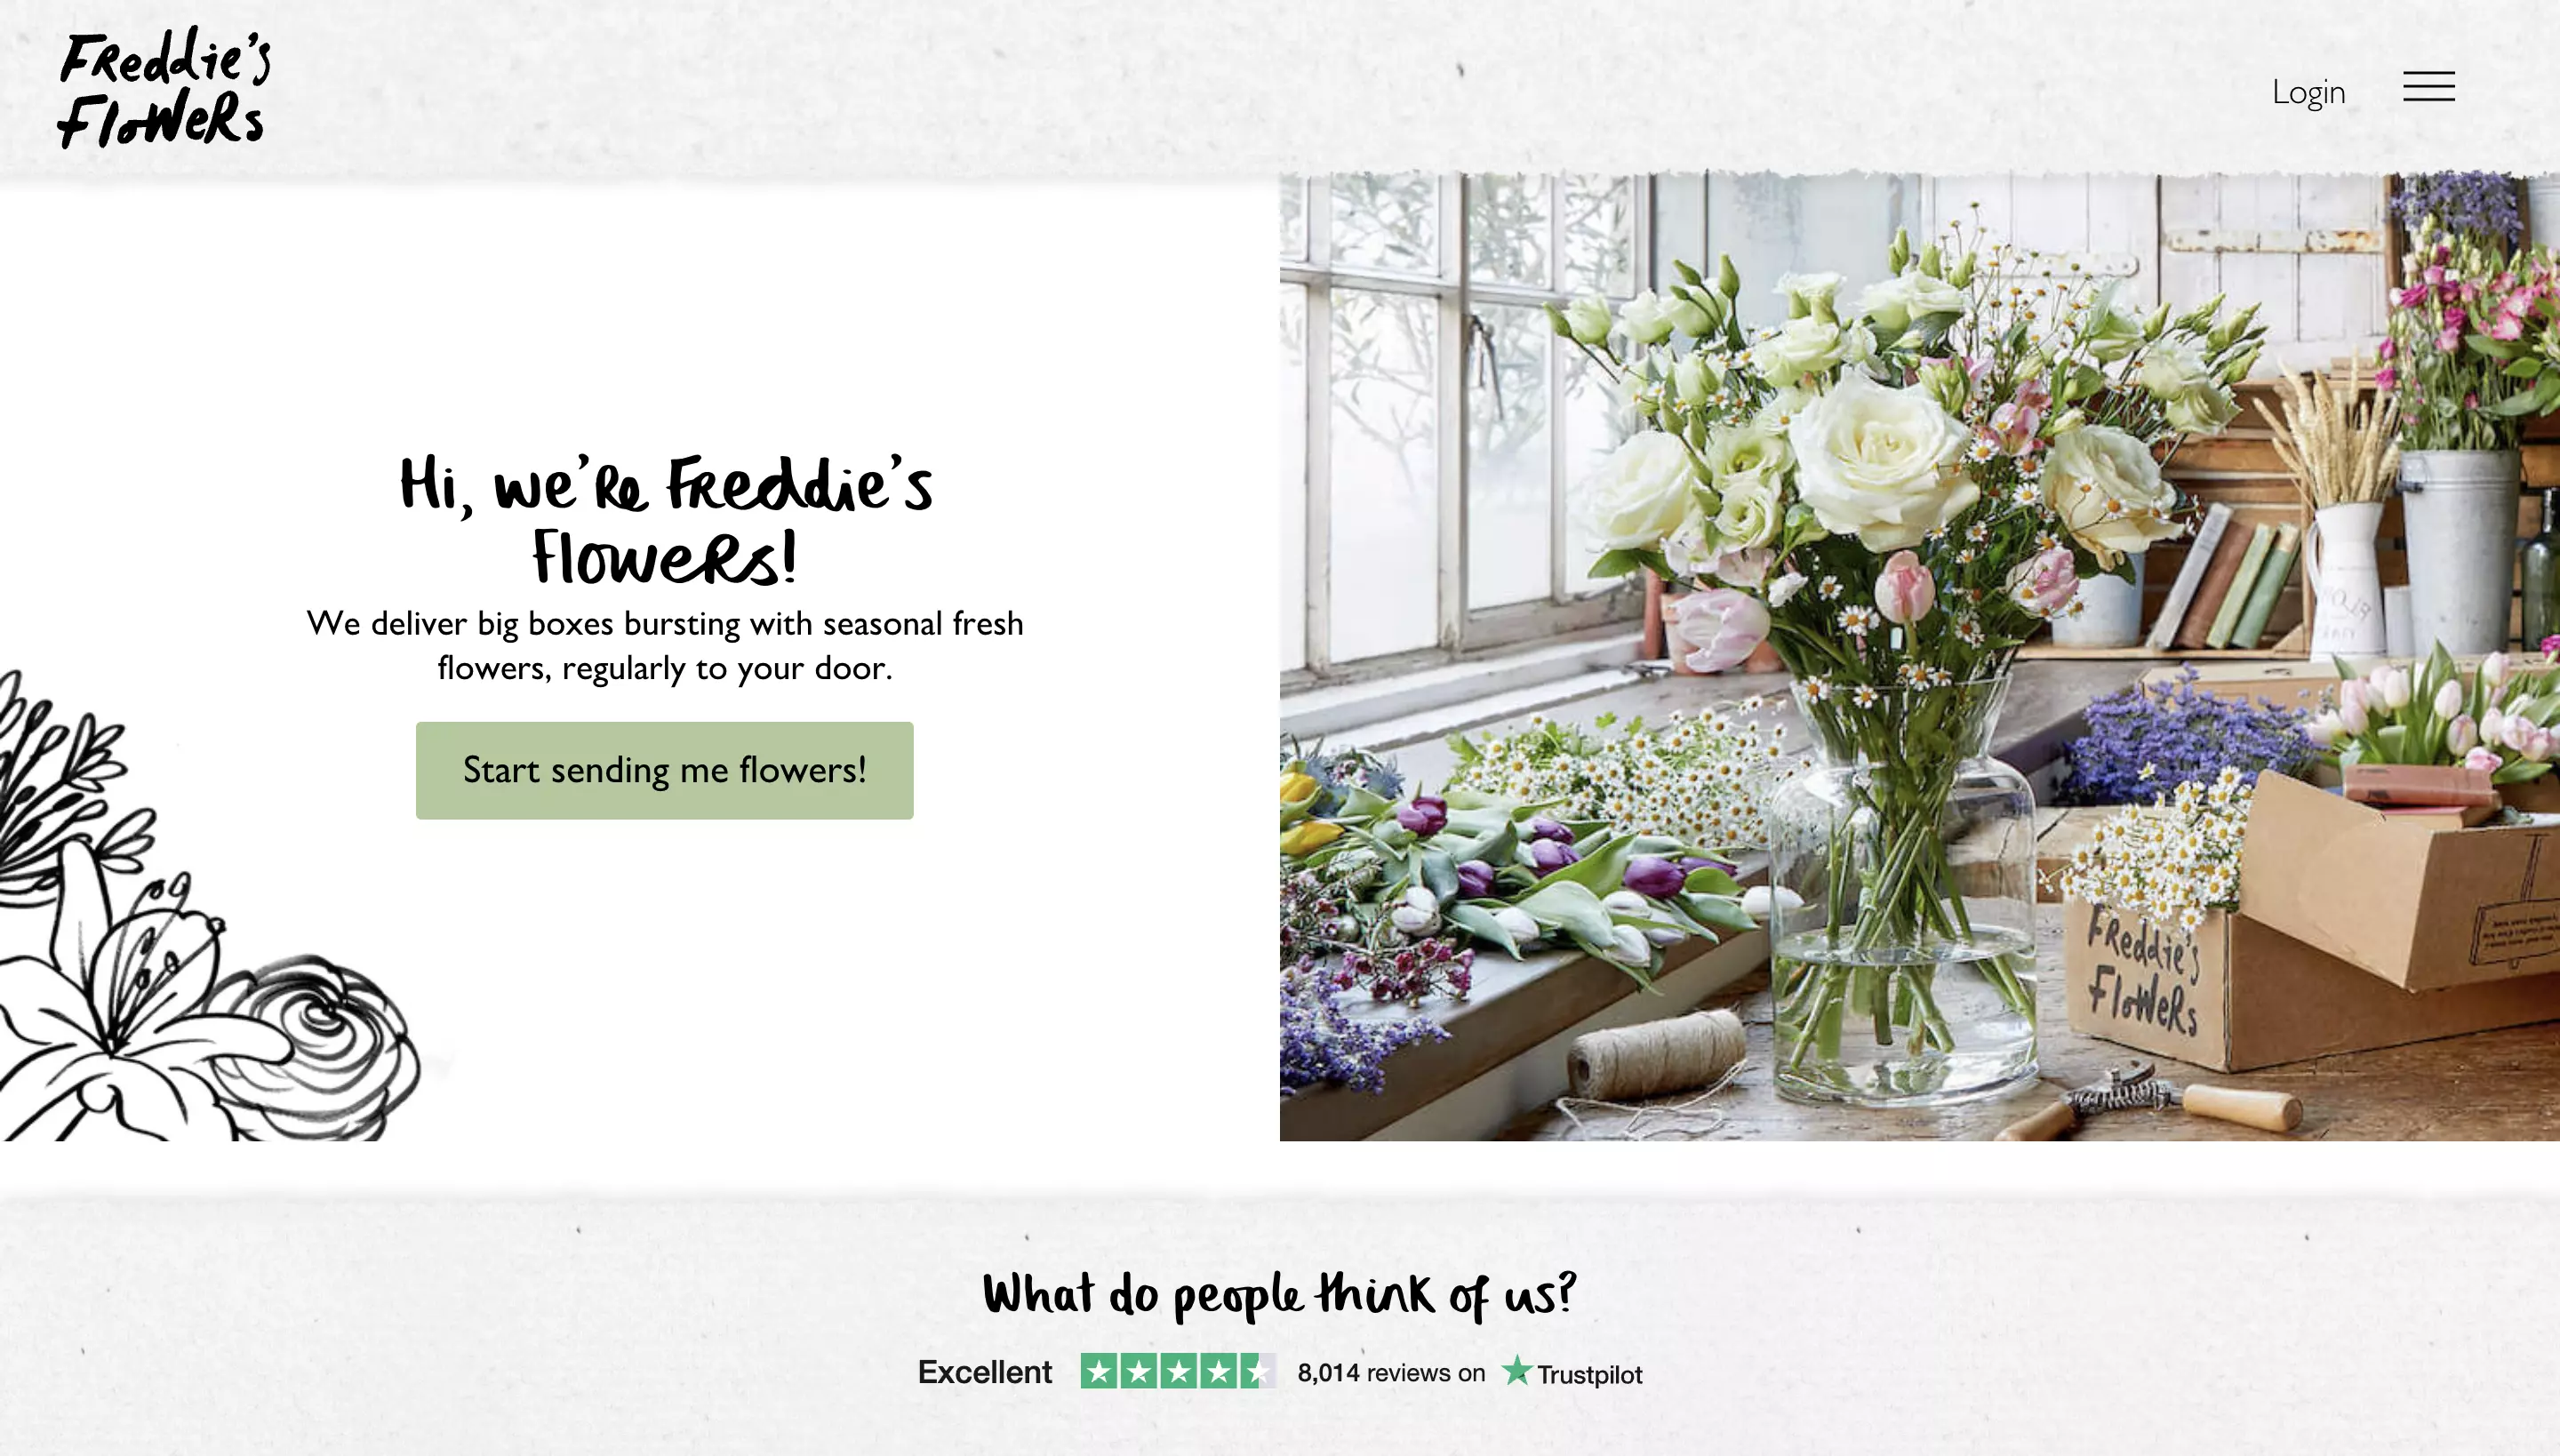 freddies-flowers-homepage.webp